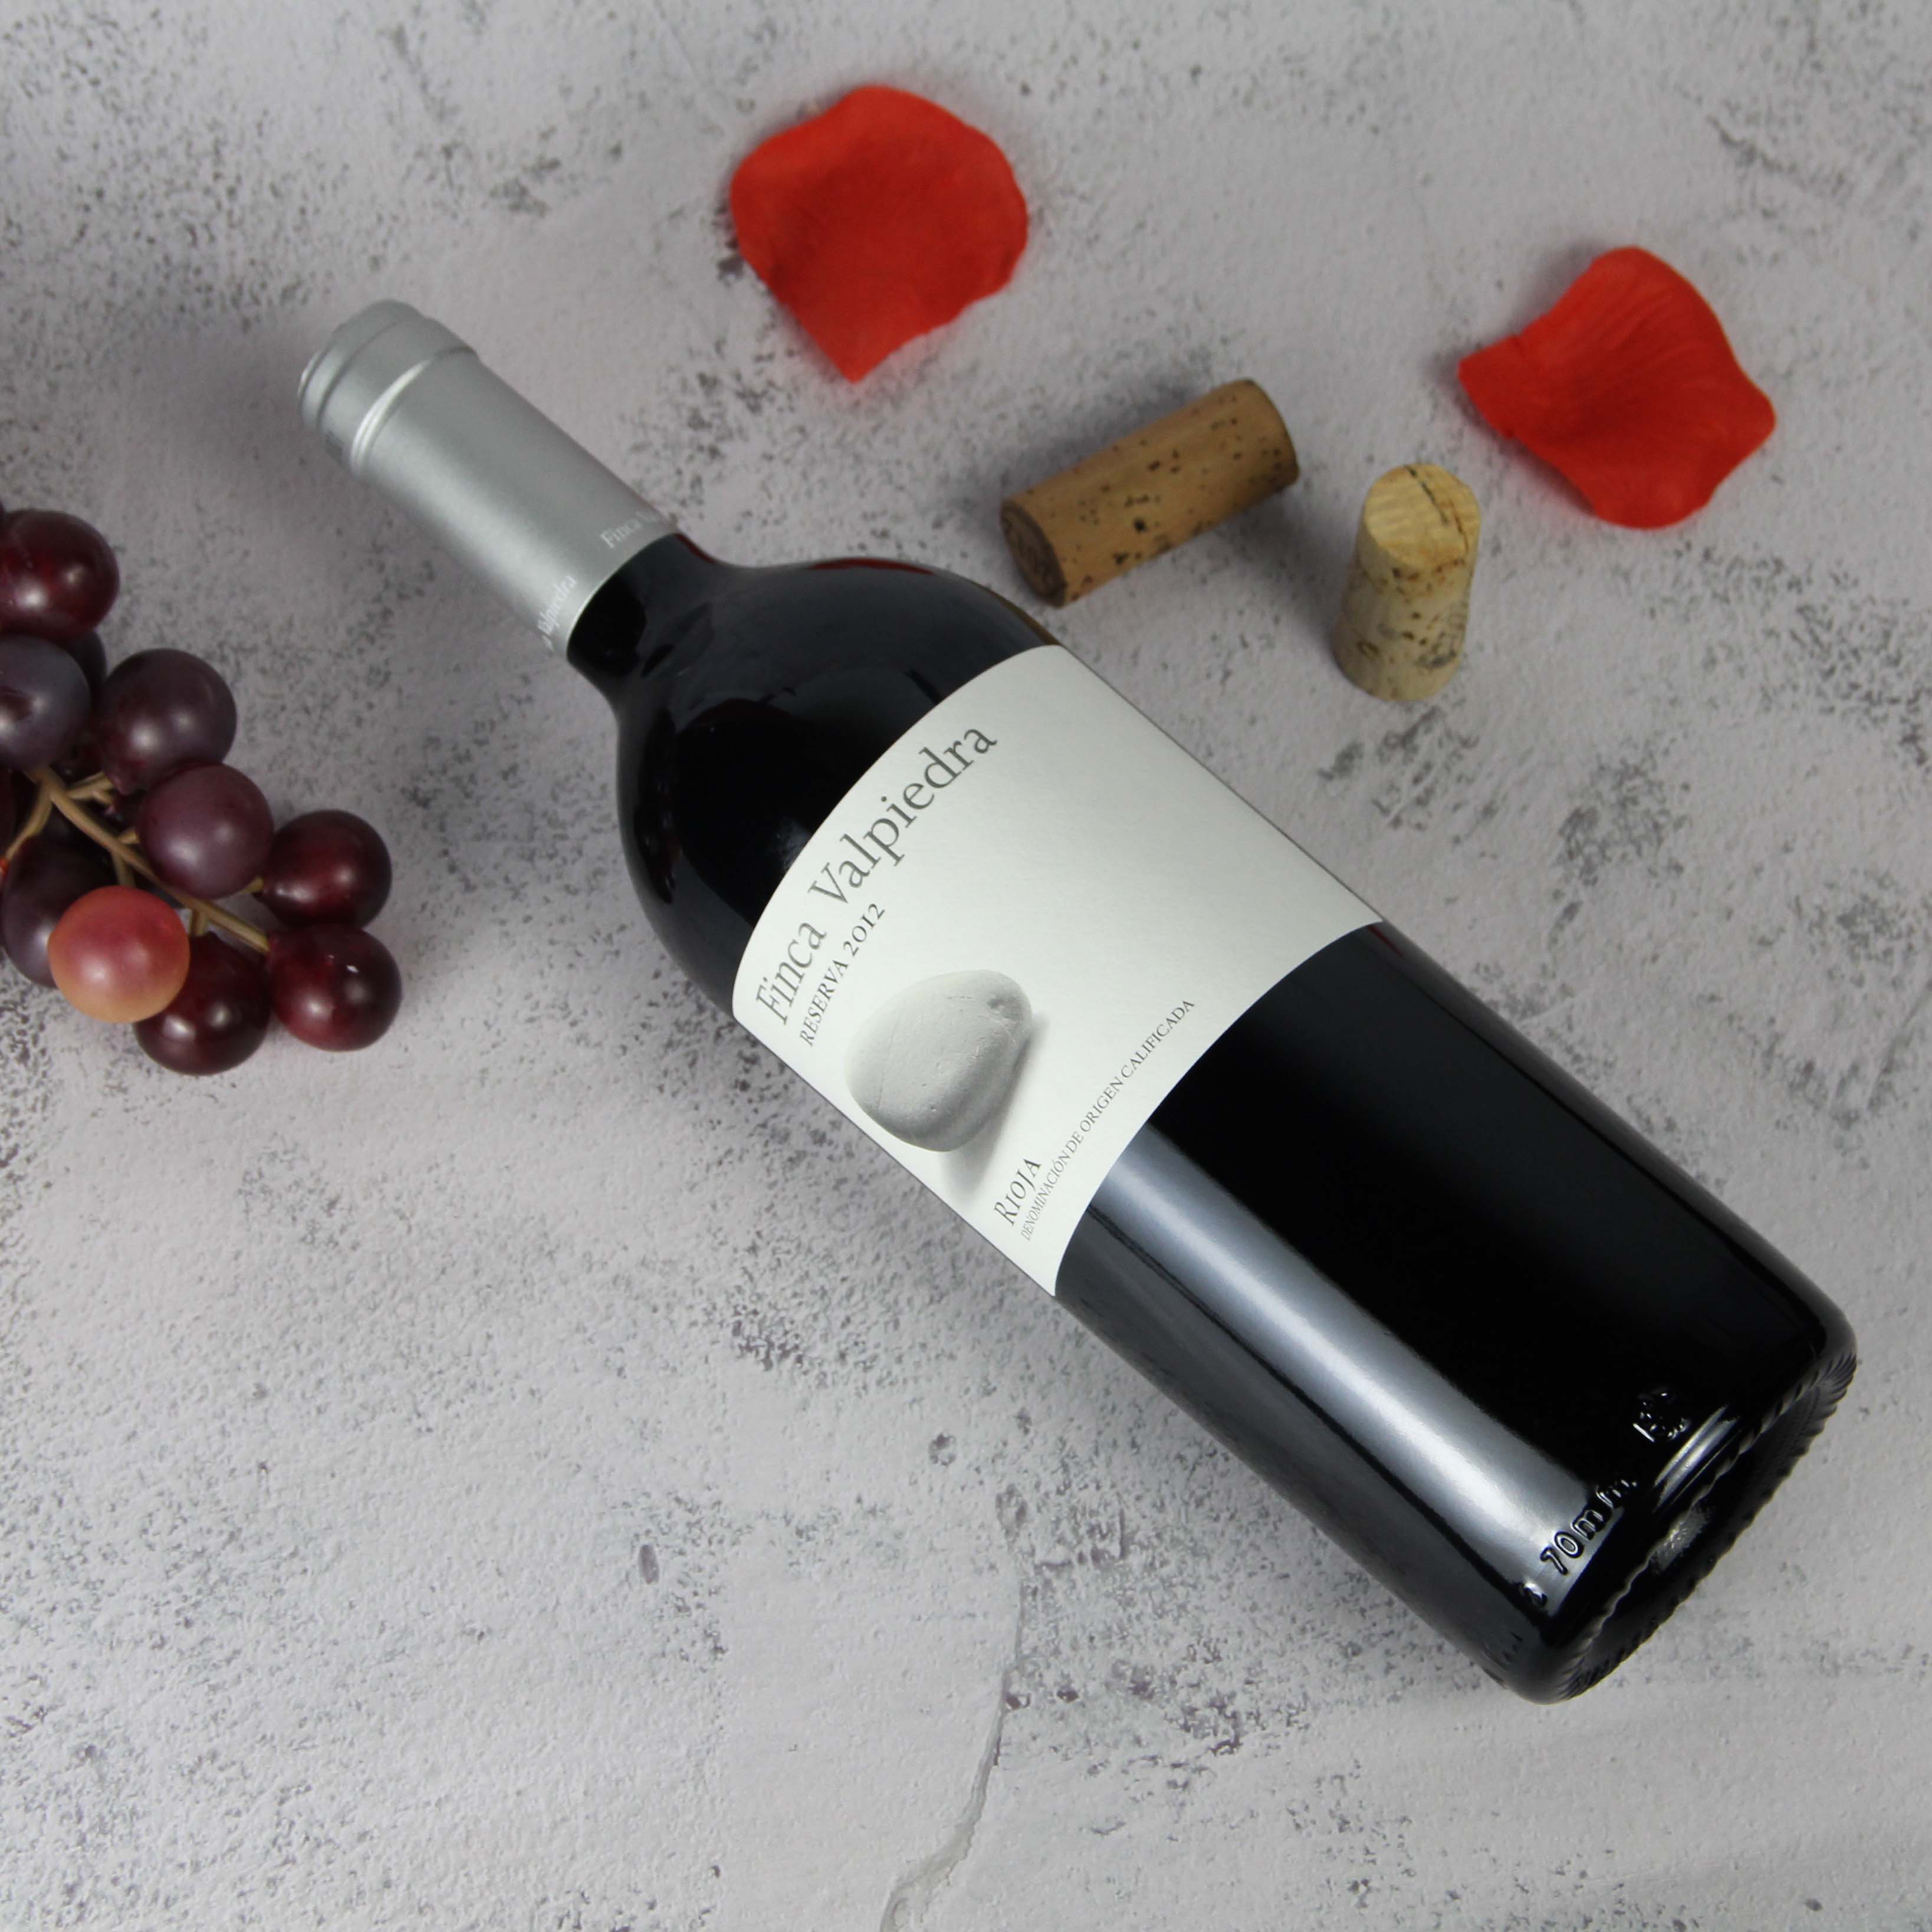 西班牙里奥哈河石谷庄园珍藏干红葡萄酒2012